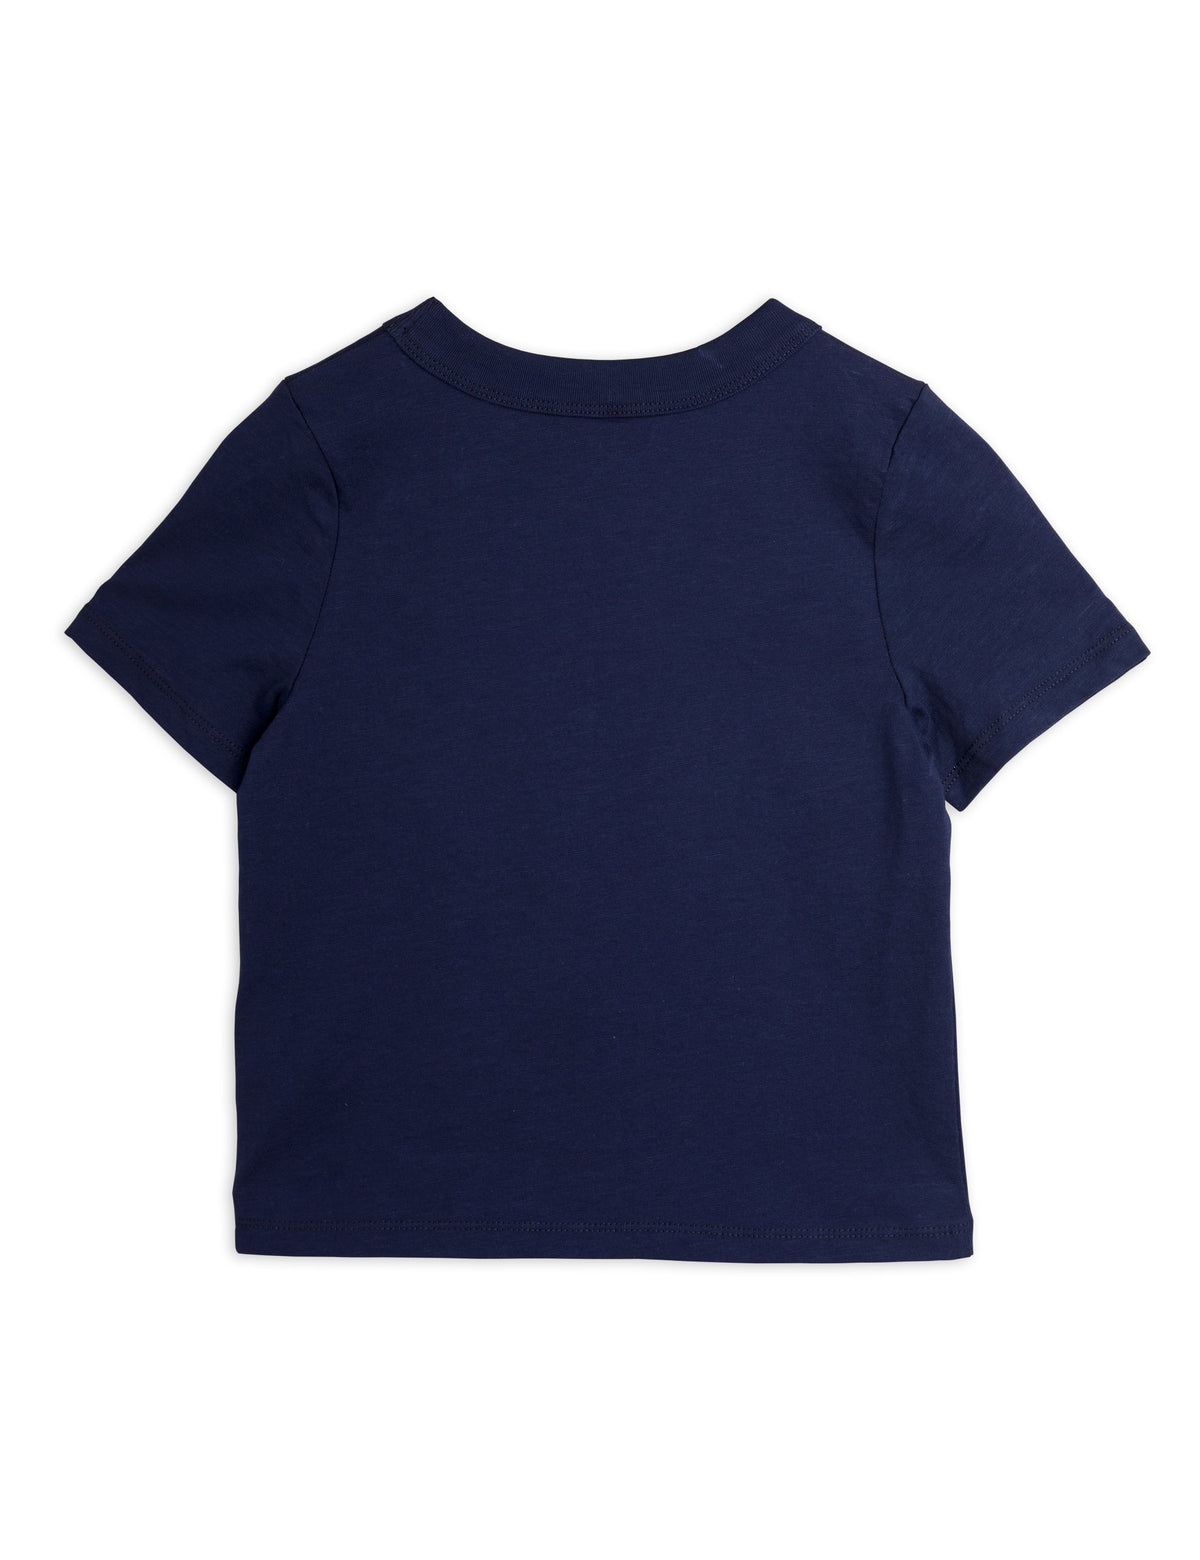 jogging emb t-shirt blue, Mini rodini no